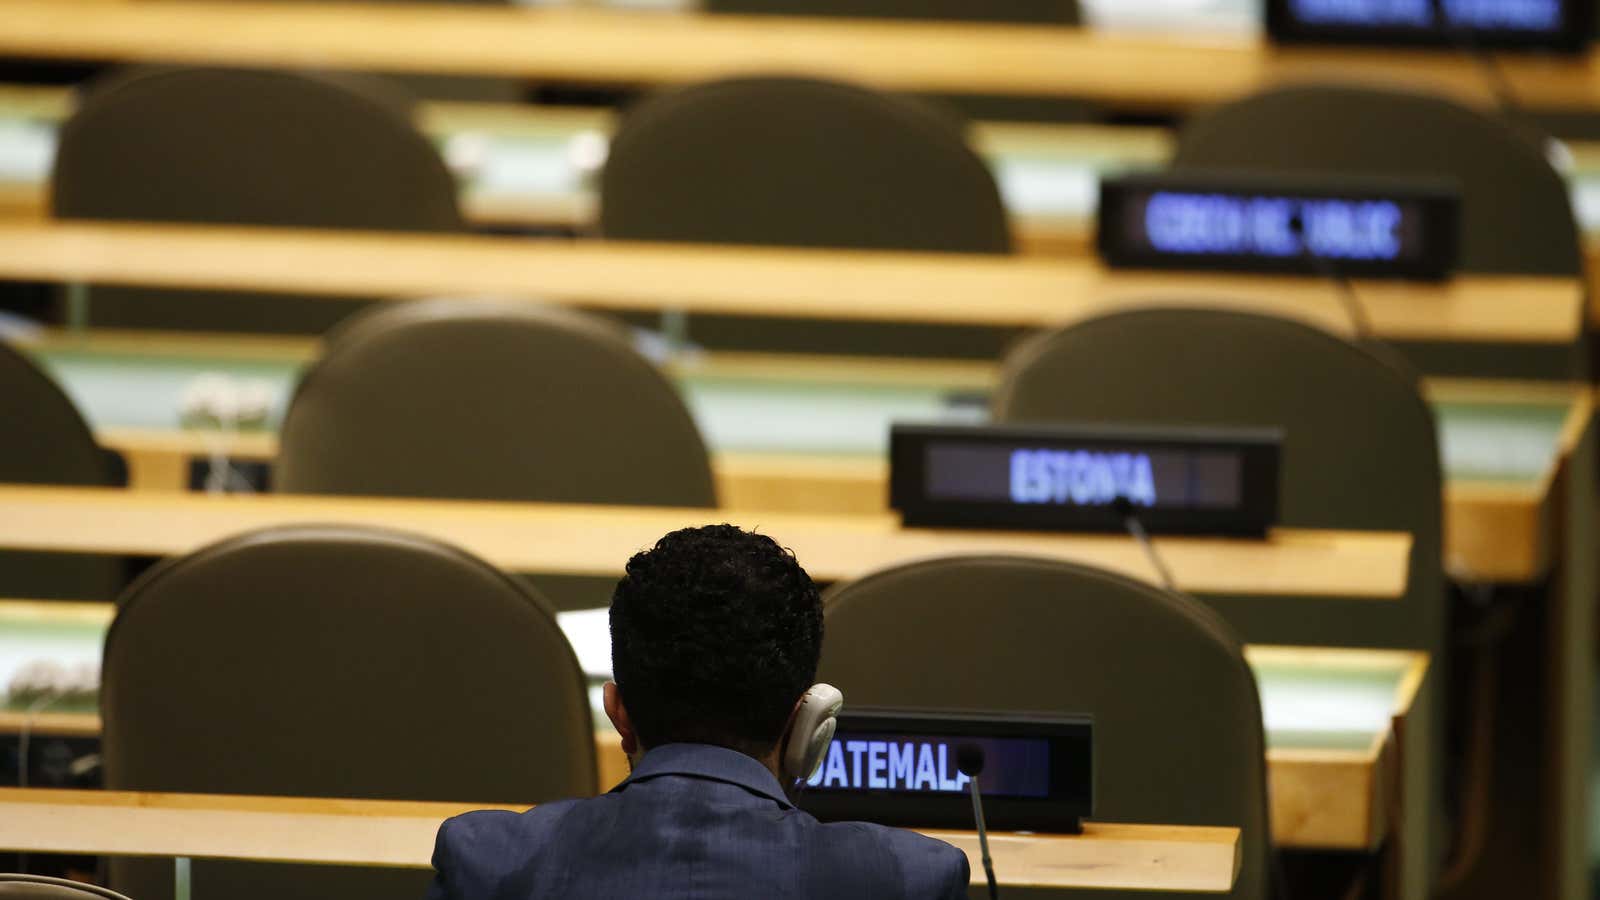 All alone at the UN.